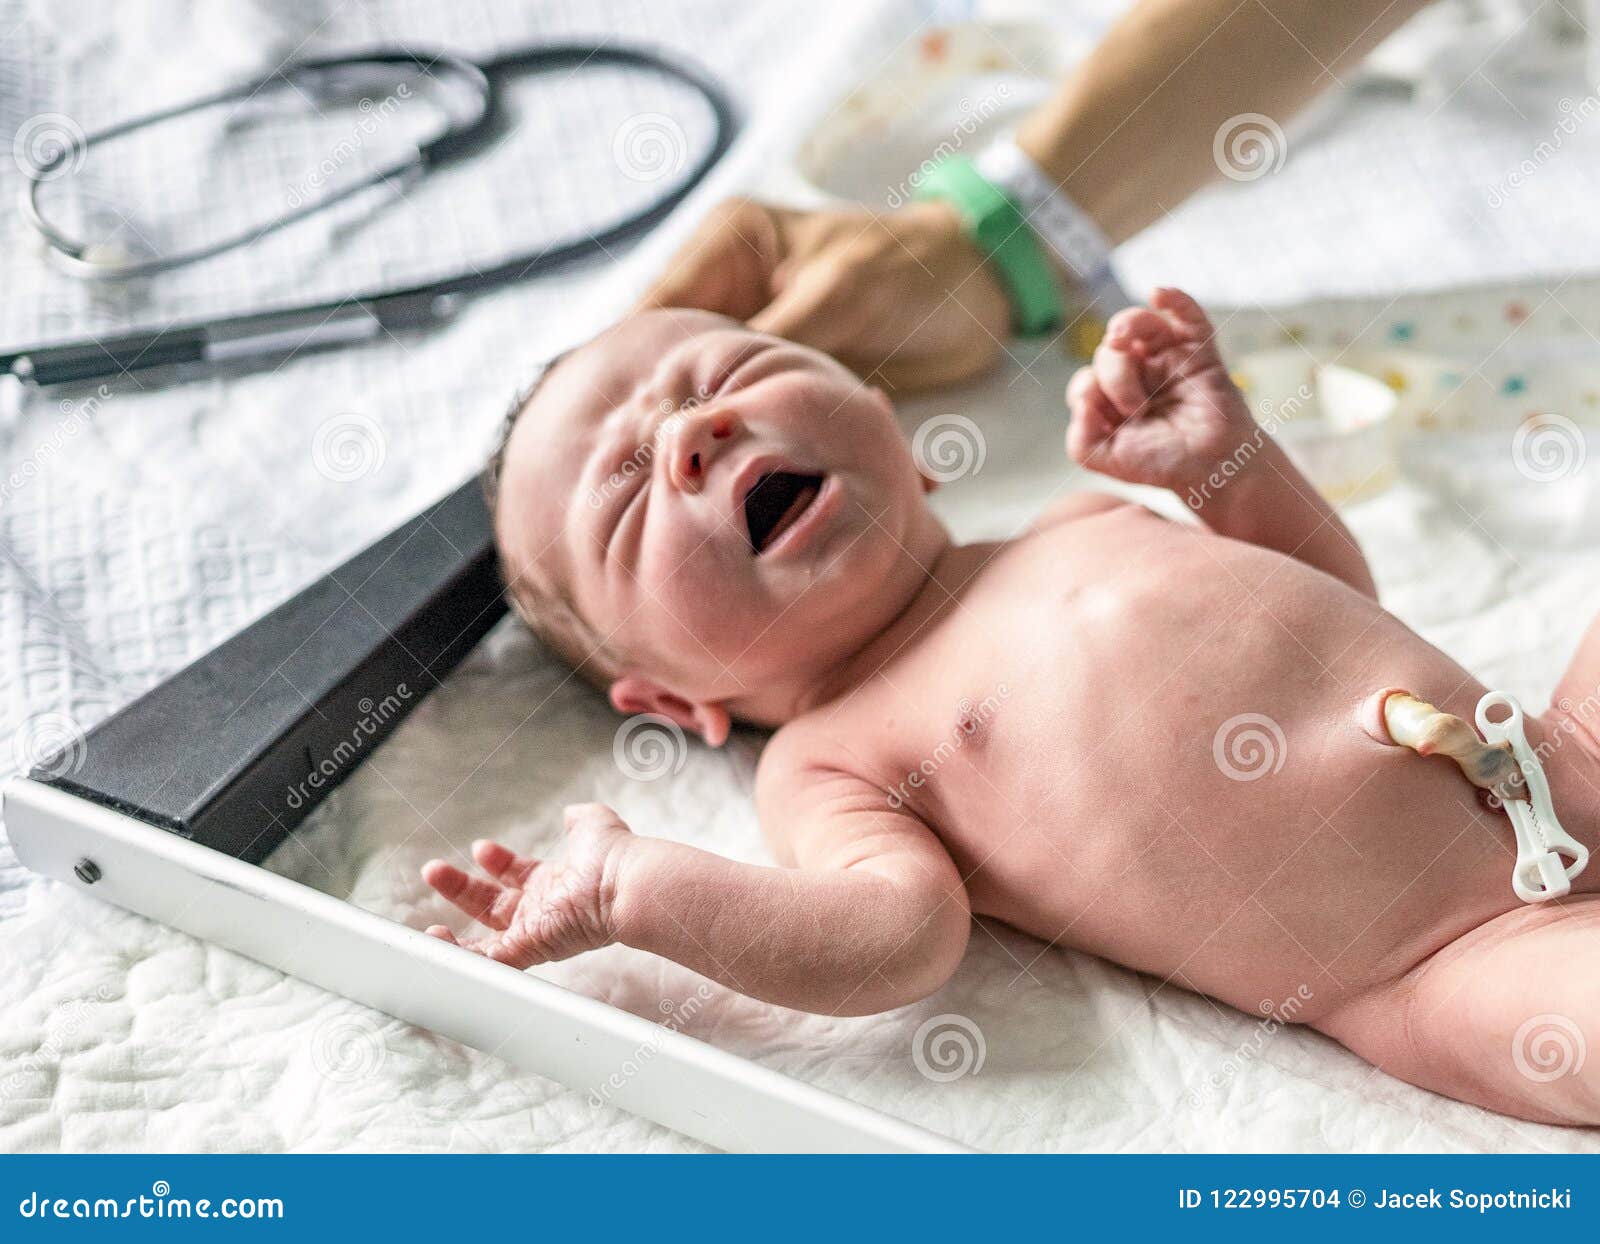 Taille De Mesure D Un Bebe Garcon Nouveau Ne Photo Stock Image Du Docteur Petit